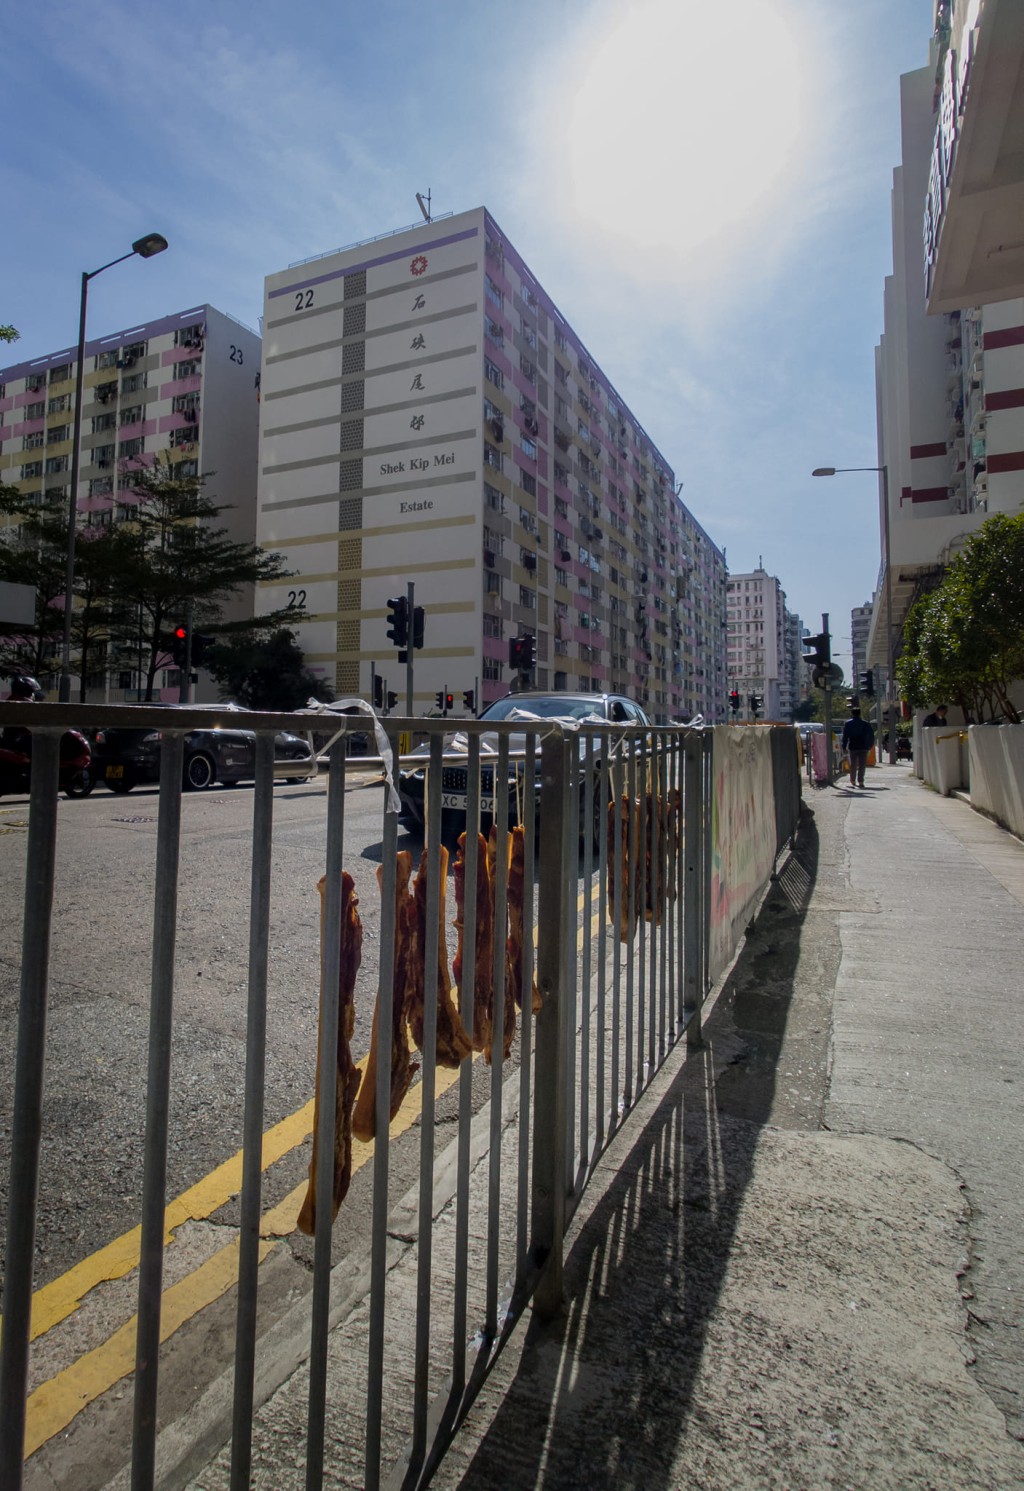 路边的栏杆上挂有多条腊肉。「香港风景摄影会」FB